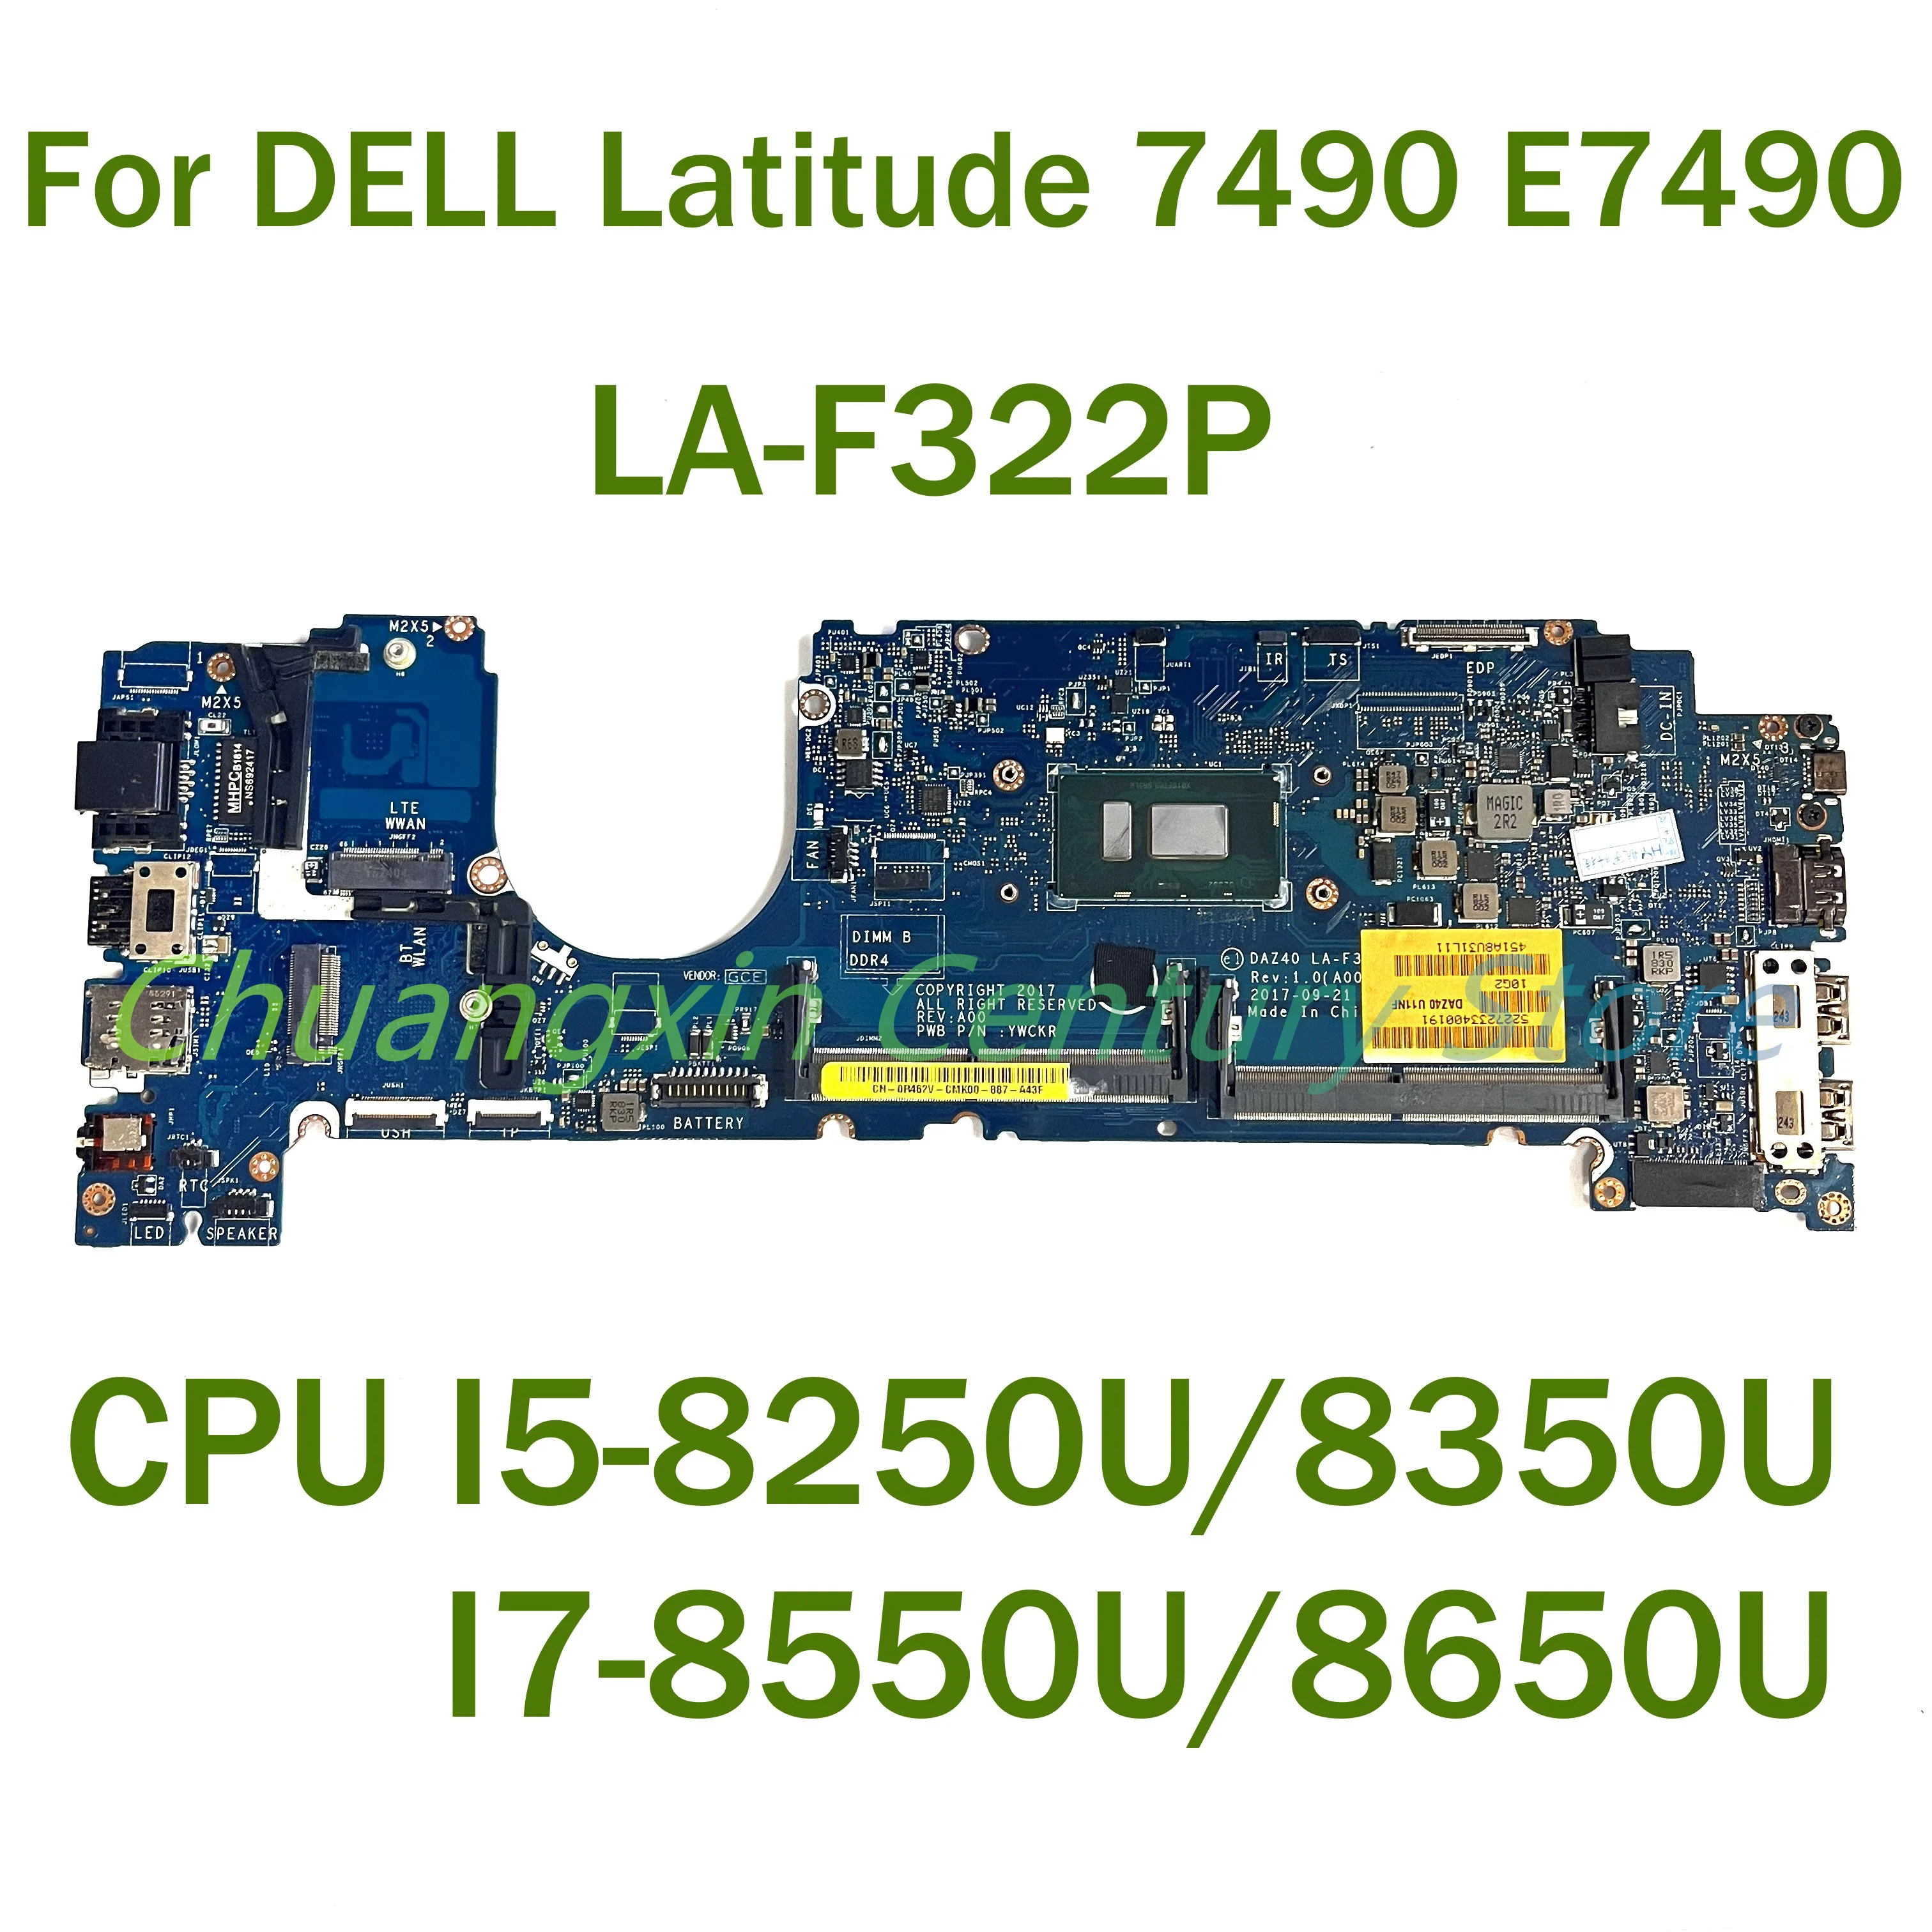 

Материнская плата для ноутбука DELL Latitude 7490 E7490 LA-F322P с центральным процессором/8350U I5-8250U/8650U 100% протестированная Полная работа